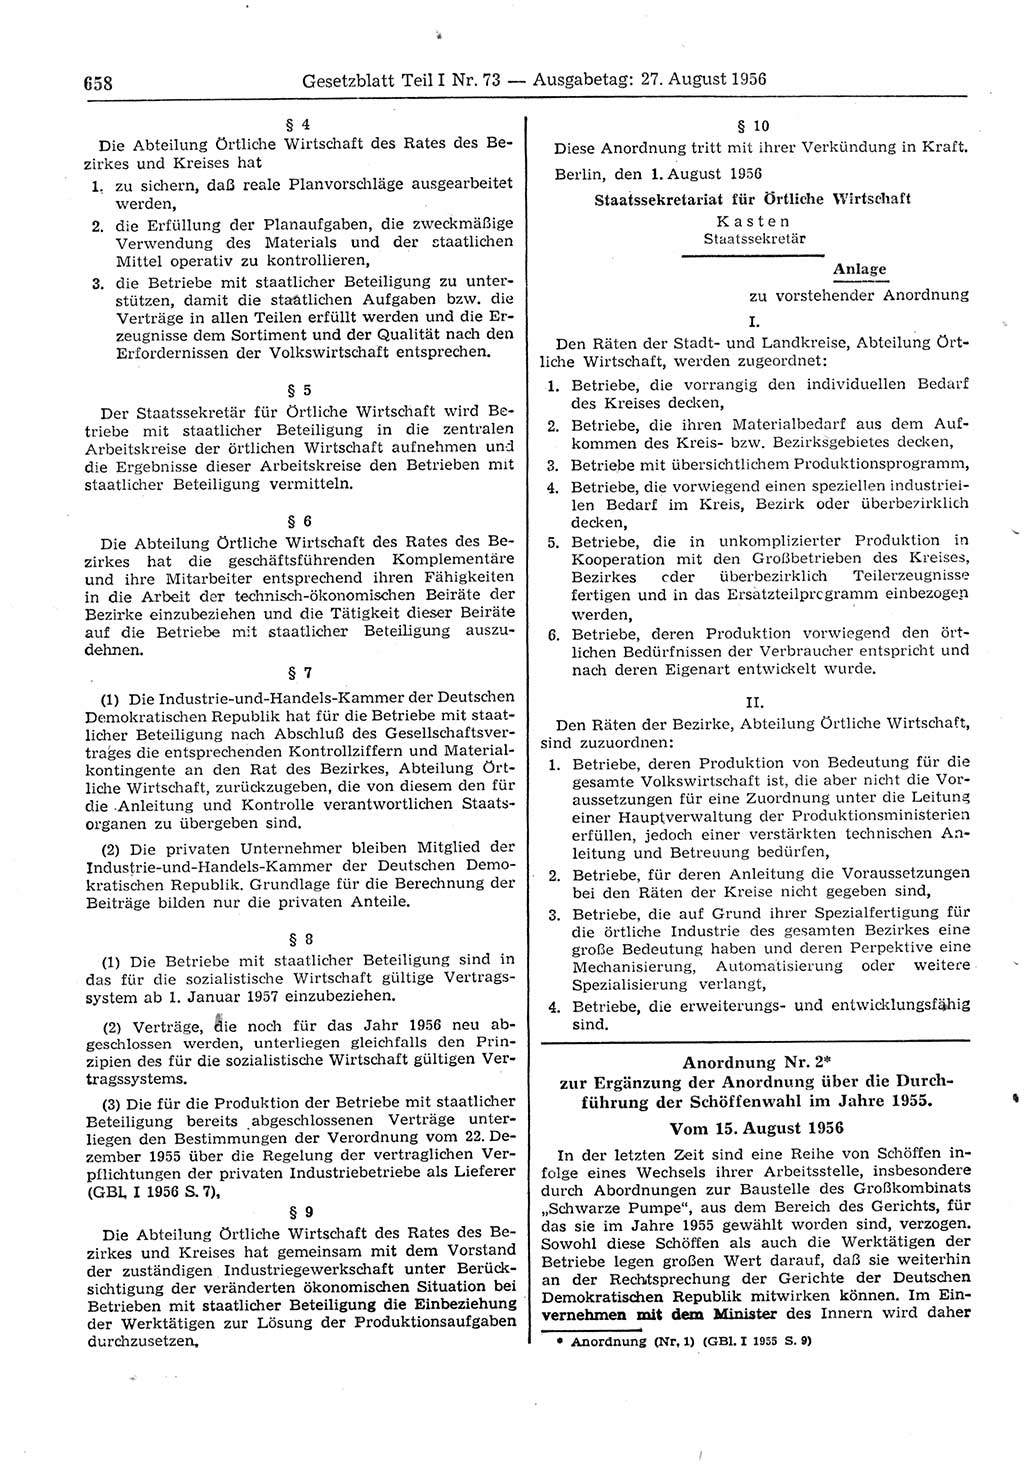 Gesetzblatt (GBl.) der Deutschen Demokratischen Republik (DDR) Teil Ⅰ 1956, Seite 658 (GBl. DDR Ⅰ 1956, S. 658)